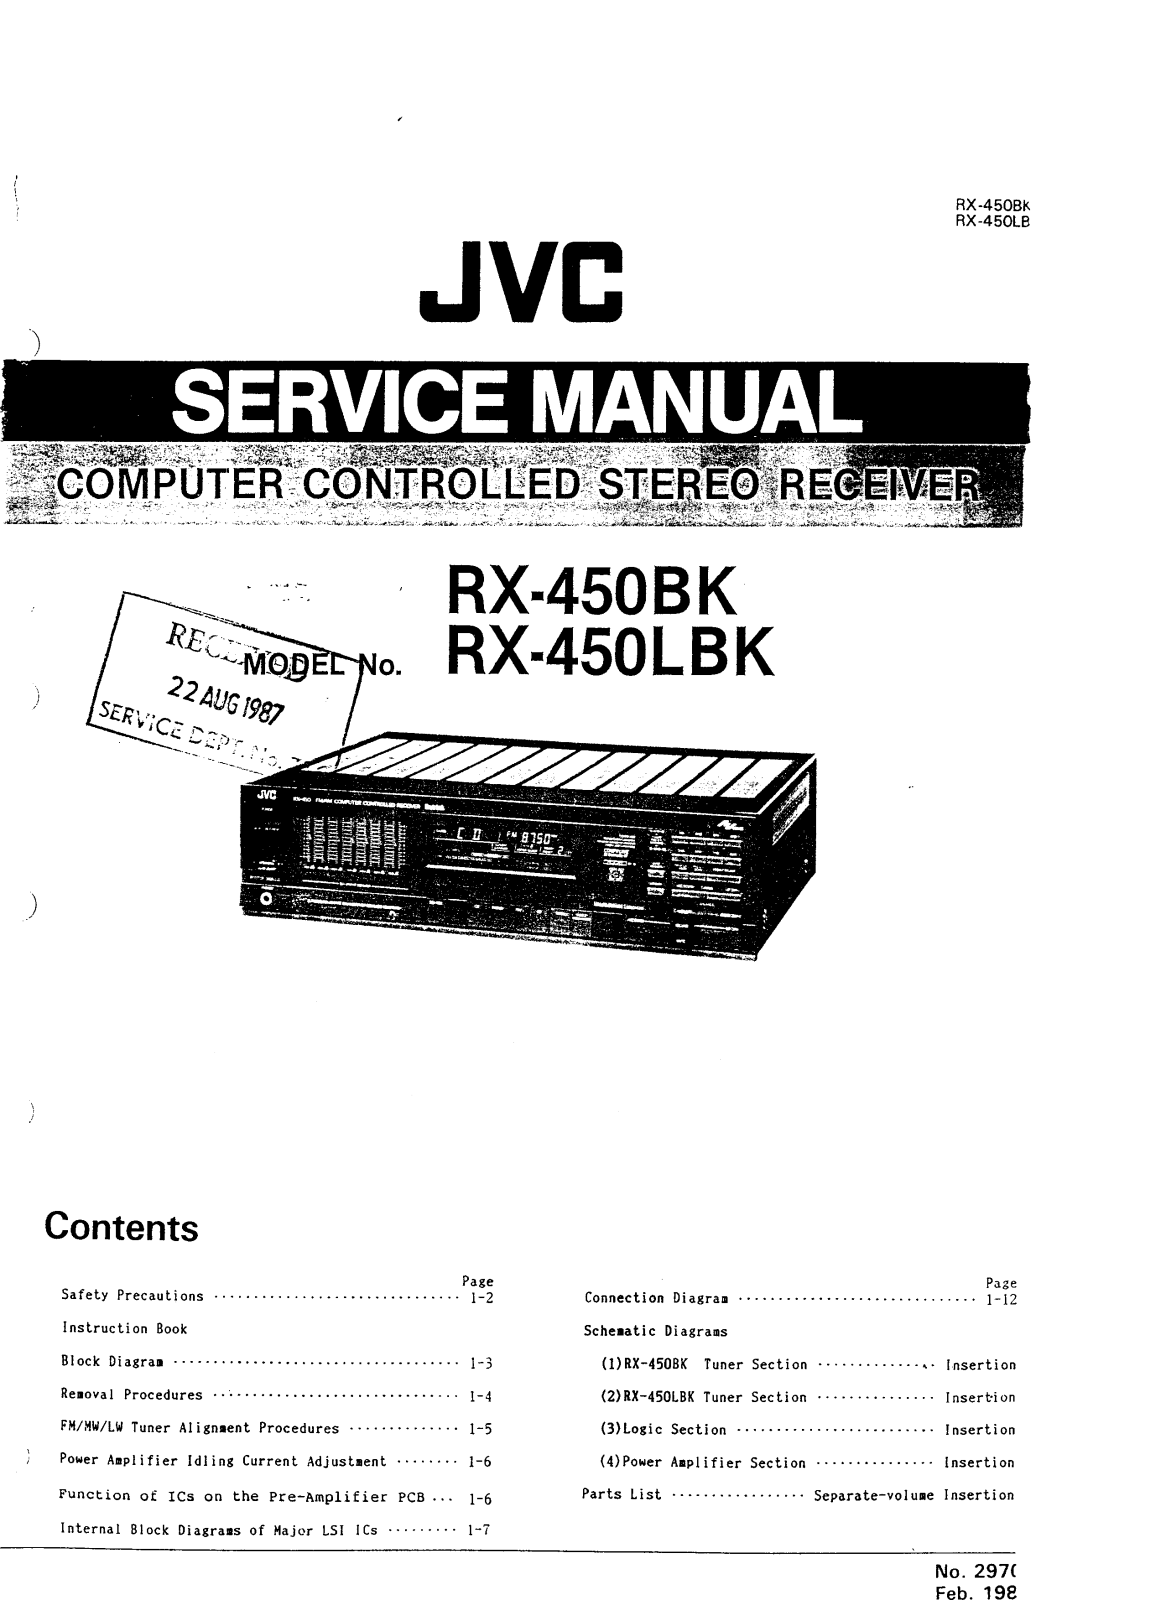 JVC RX-450-LBK Service manual